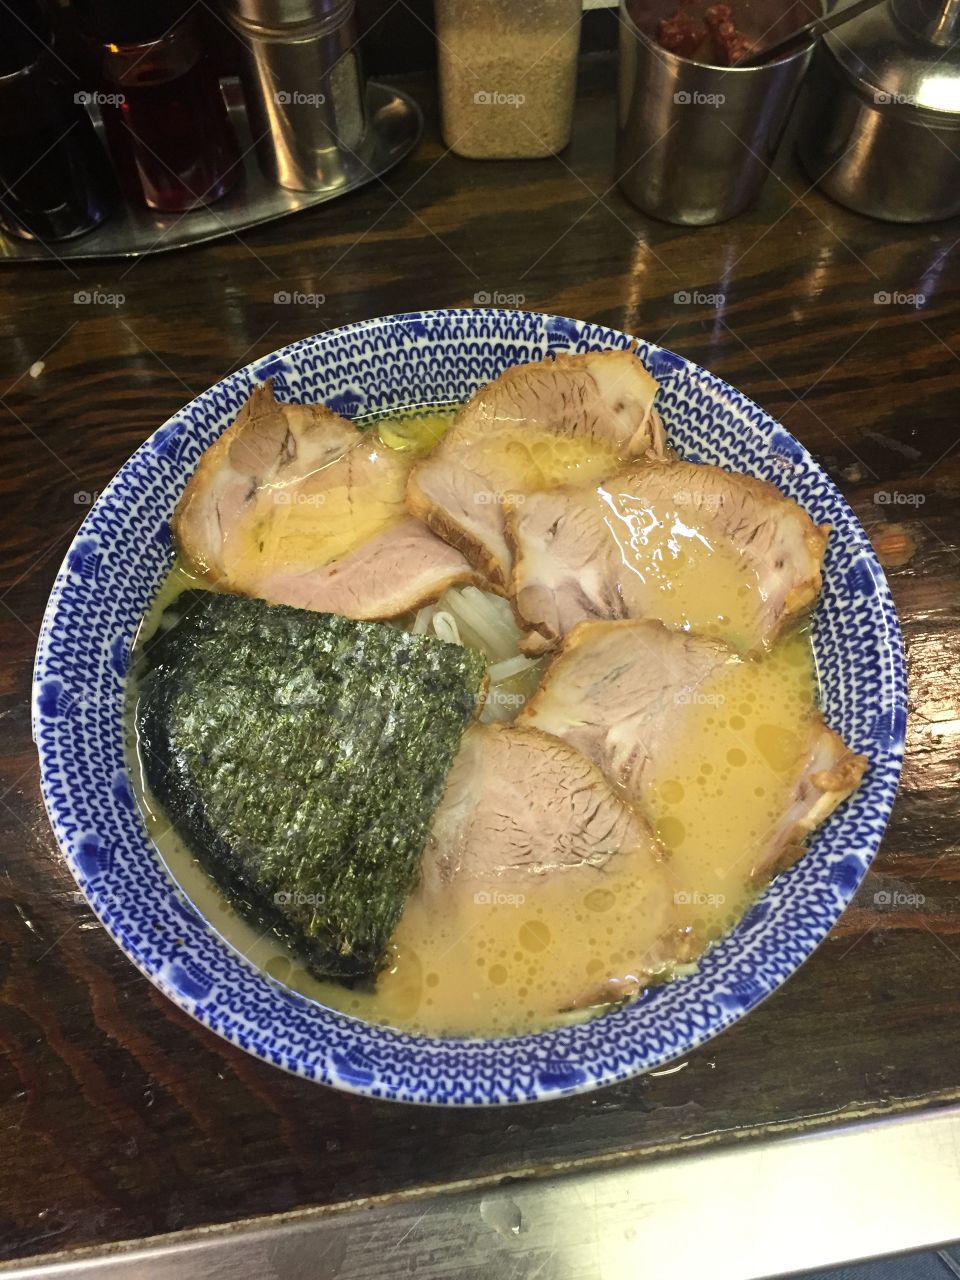 Super delicious ramen I ate in Tokyo!